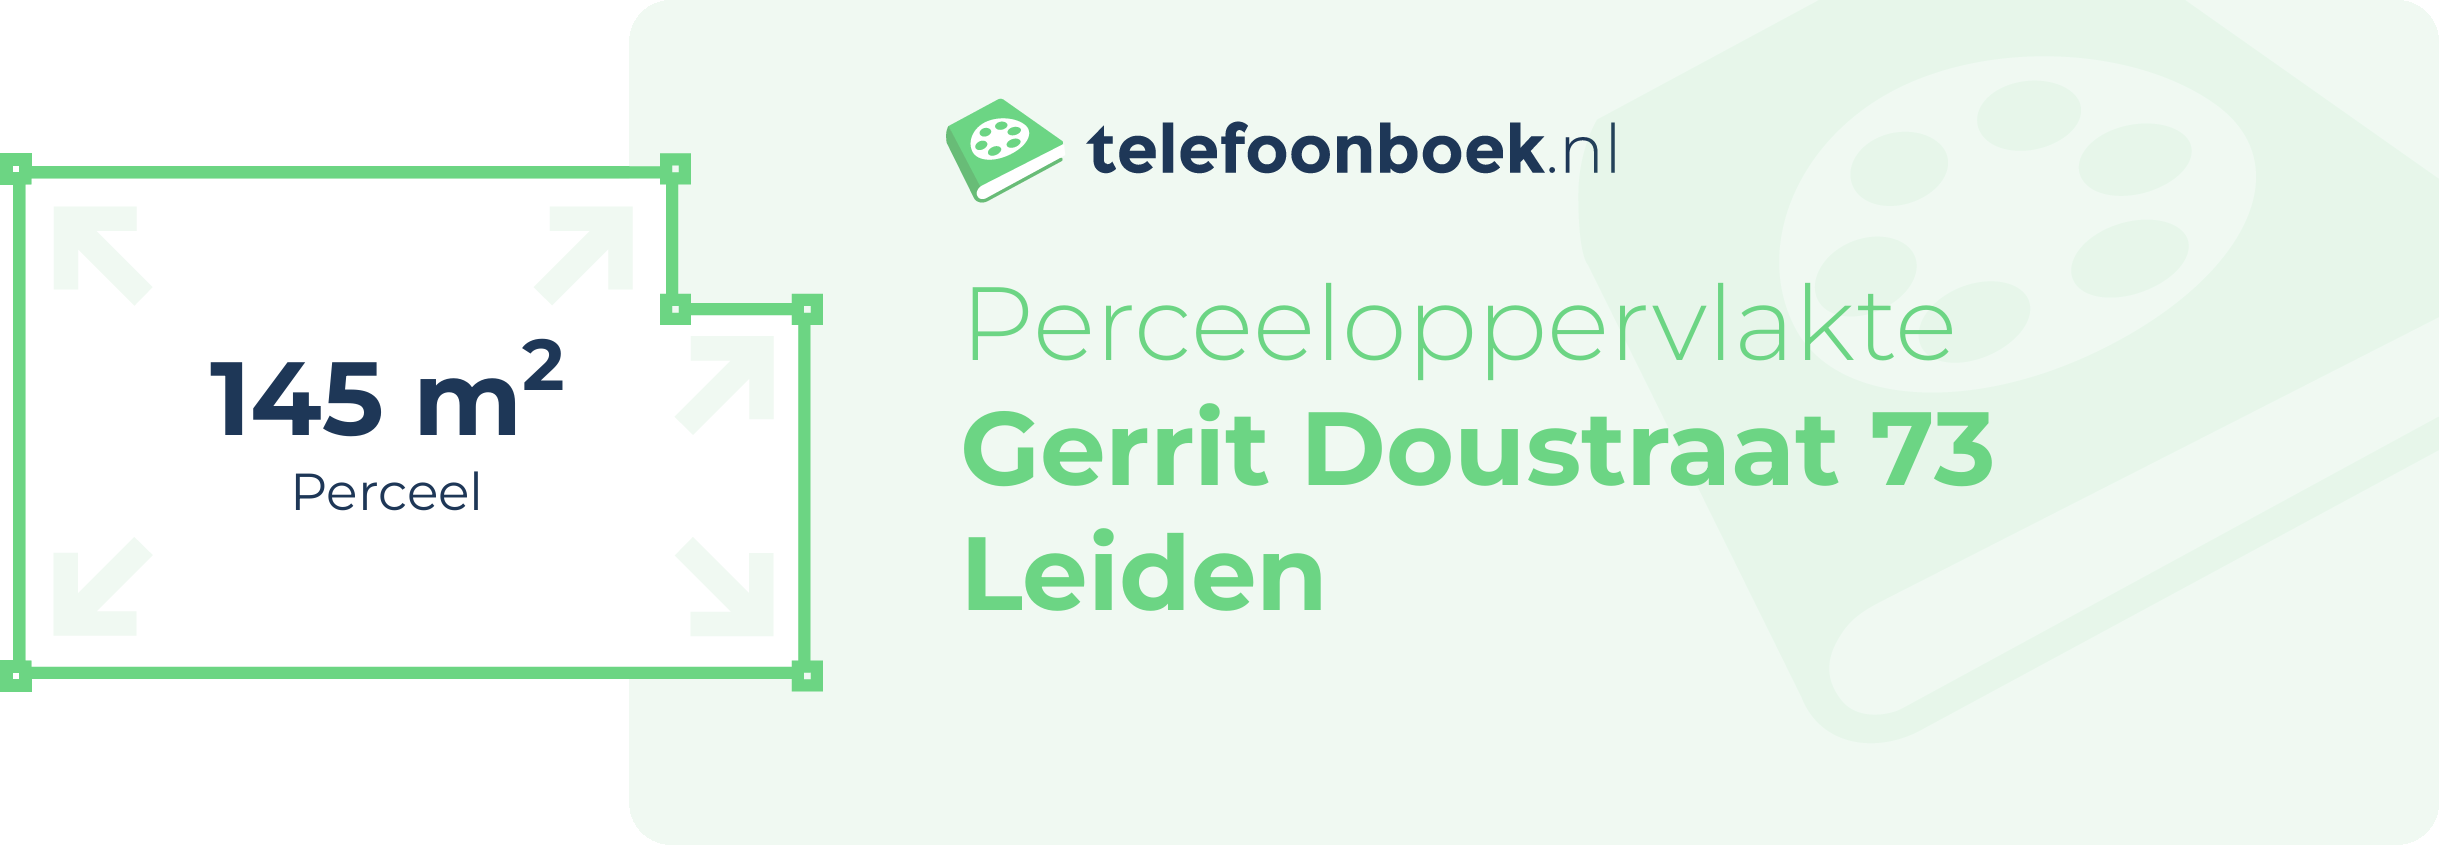 Perceeloppervlakte Gerrit Doustraat 73 Leiden